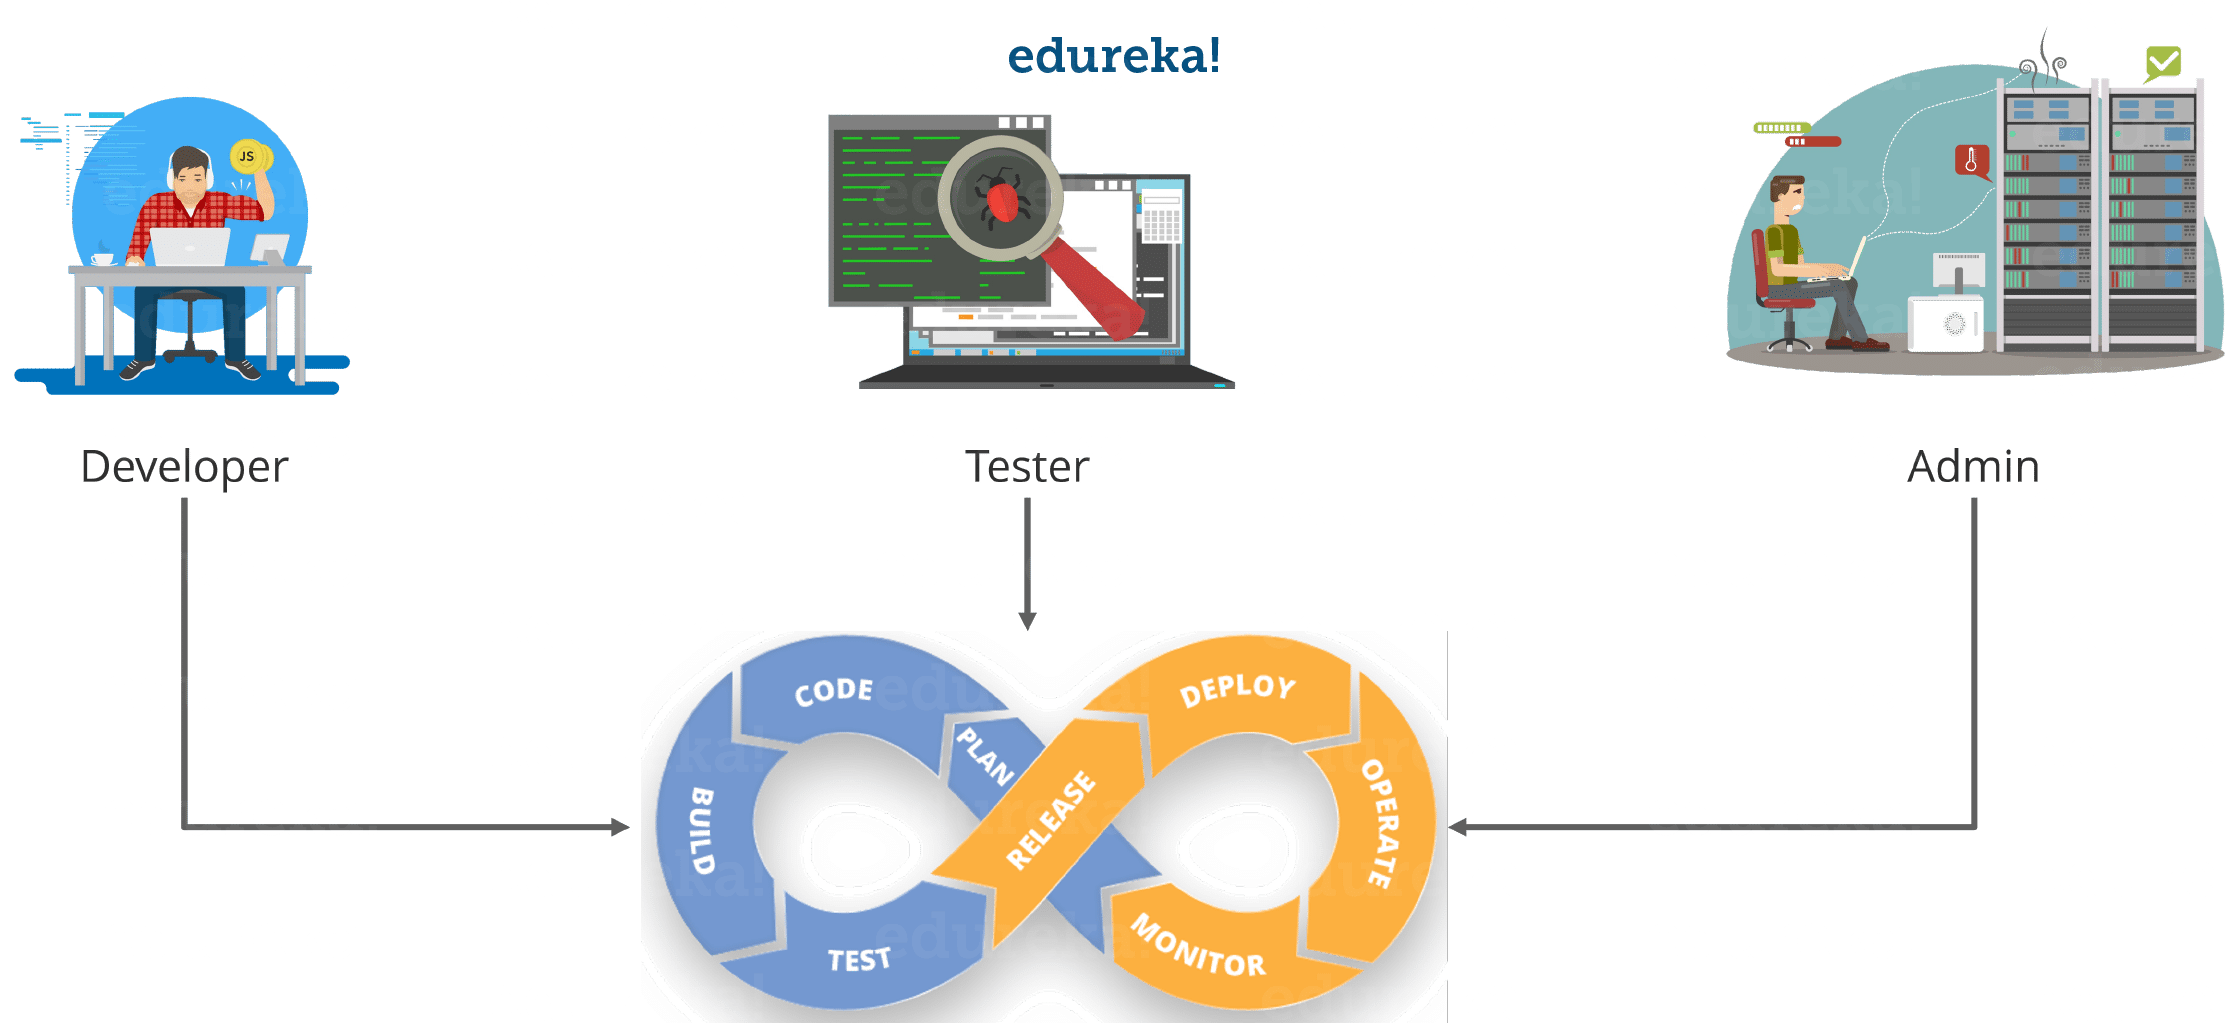 Anyone Can Learn DevOps - Reasons To Learn DevOps - Edureka